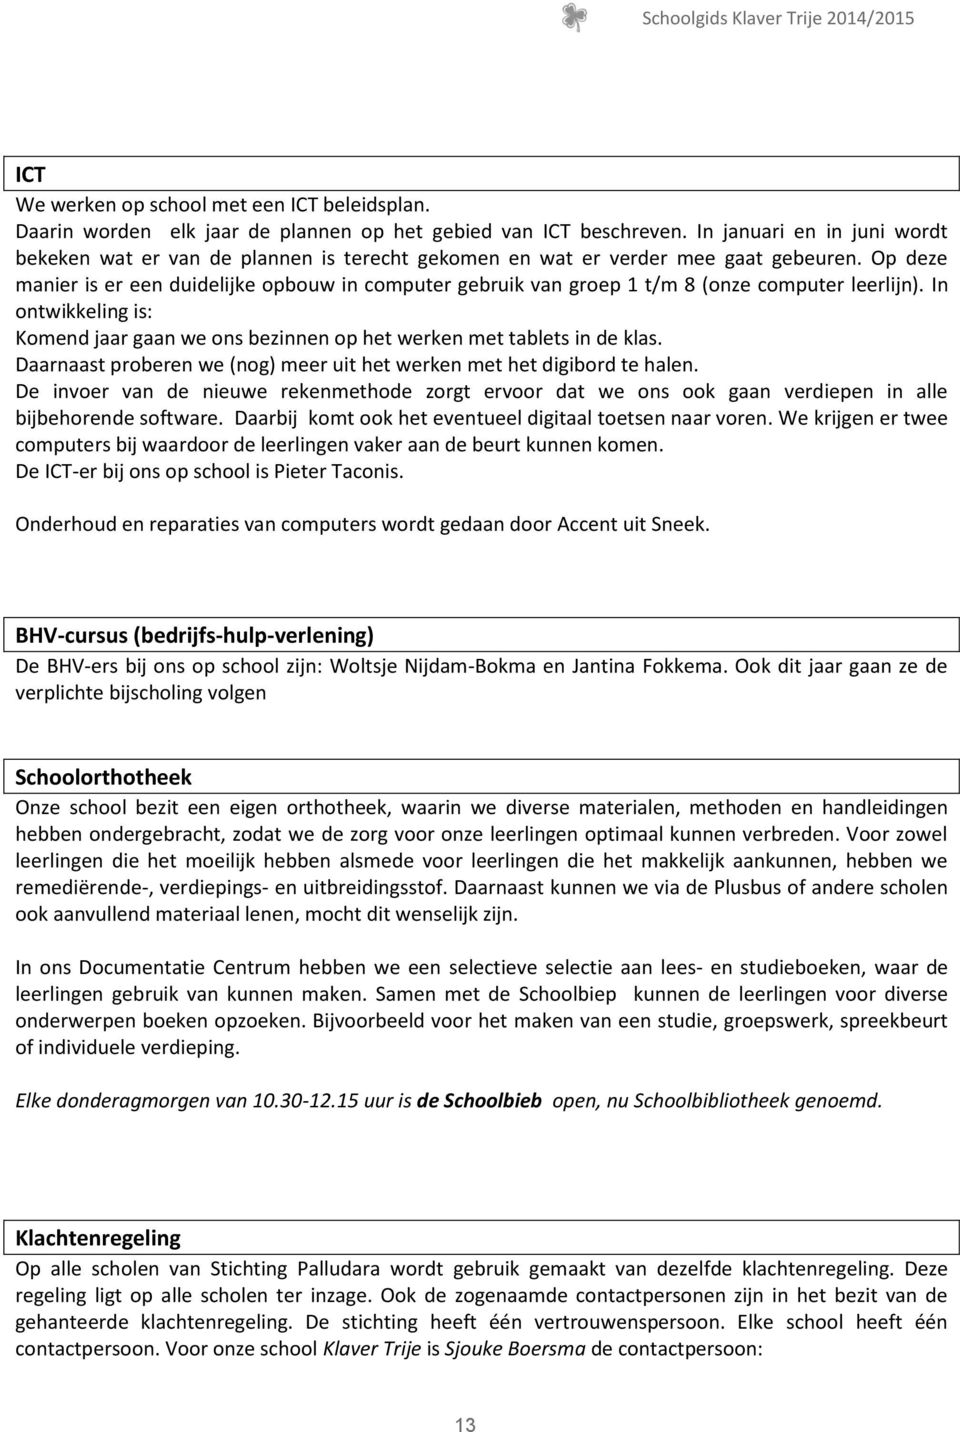 Eerste draadloze gek geworden Schoolgids Klaver Trije Titelpagina - PDF Gratis download